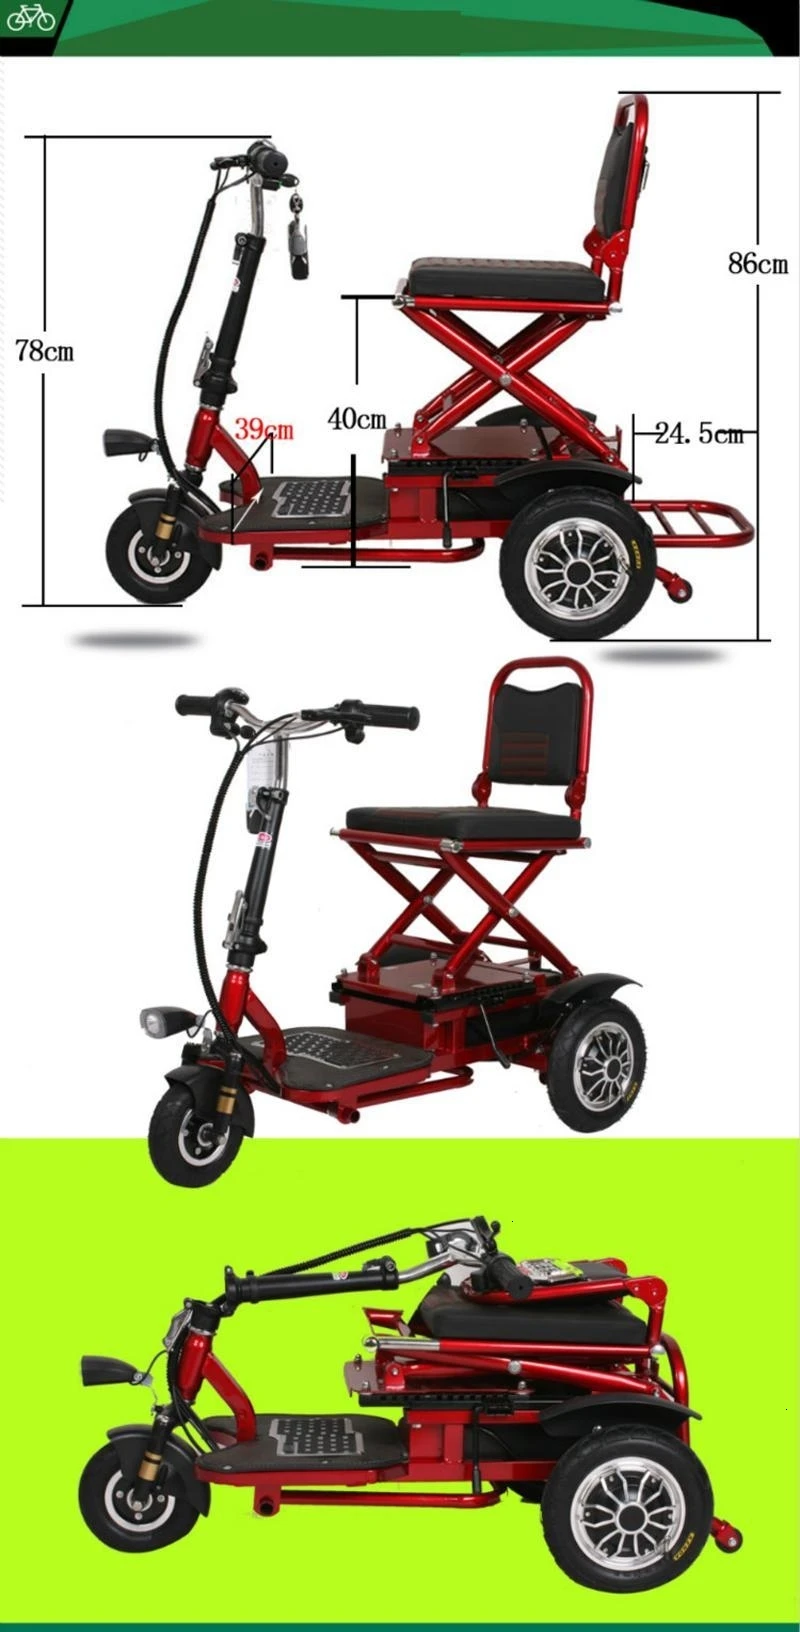 8 дюймов Электрический трехколесный велосипед для взрослых людей пожилого возраста три колеса электрический скутер 350W 48V Портативный электрический скутер, способный преодолевать Броды для инвалидов